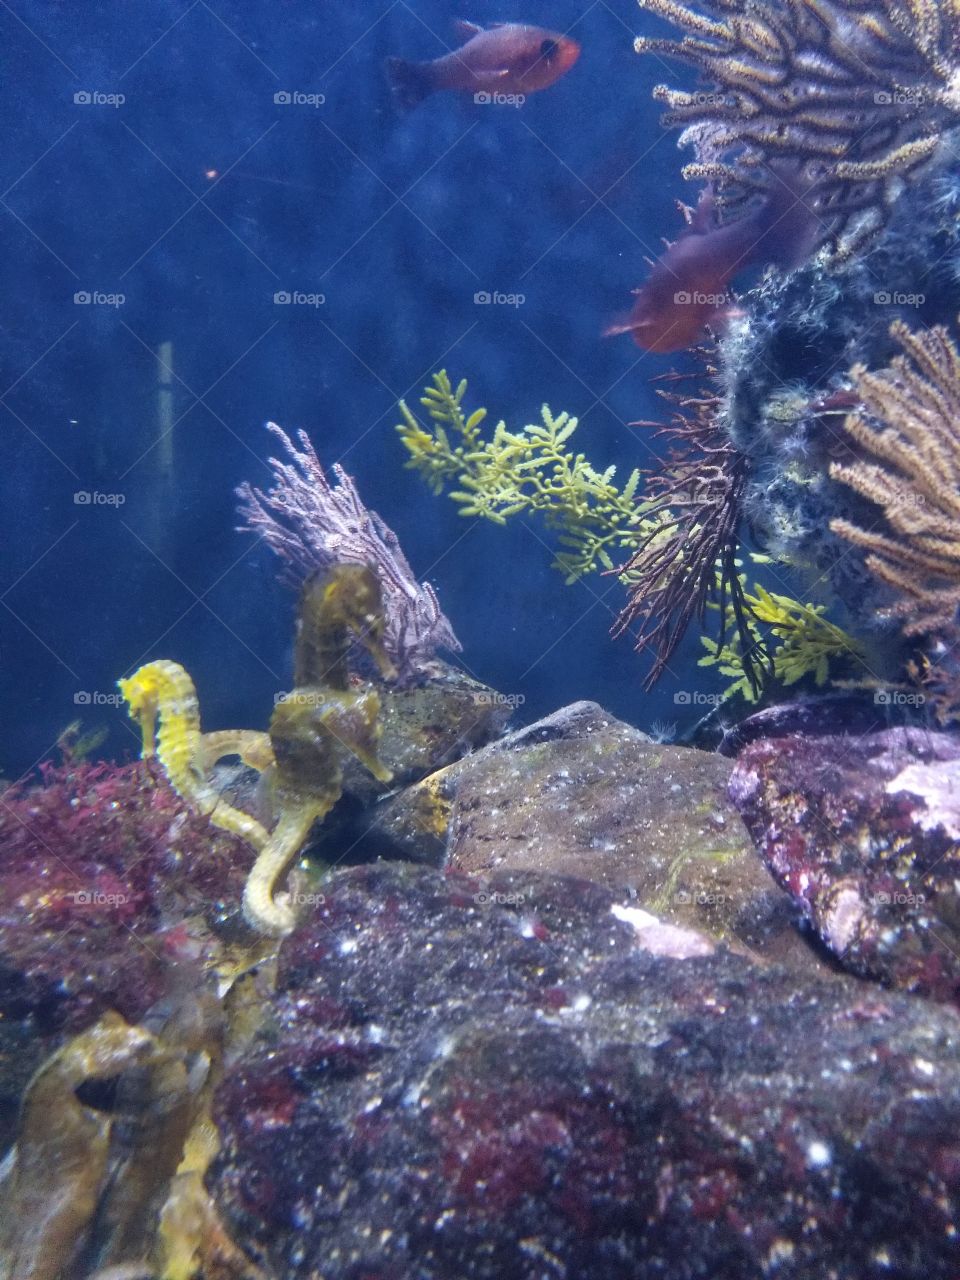 aquarium seahorse